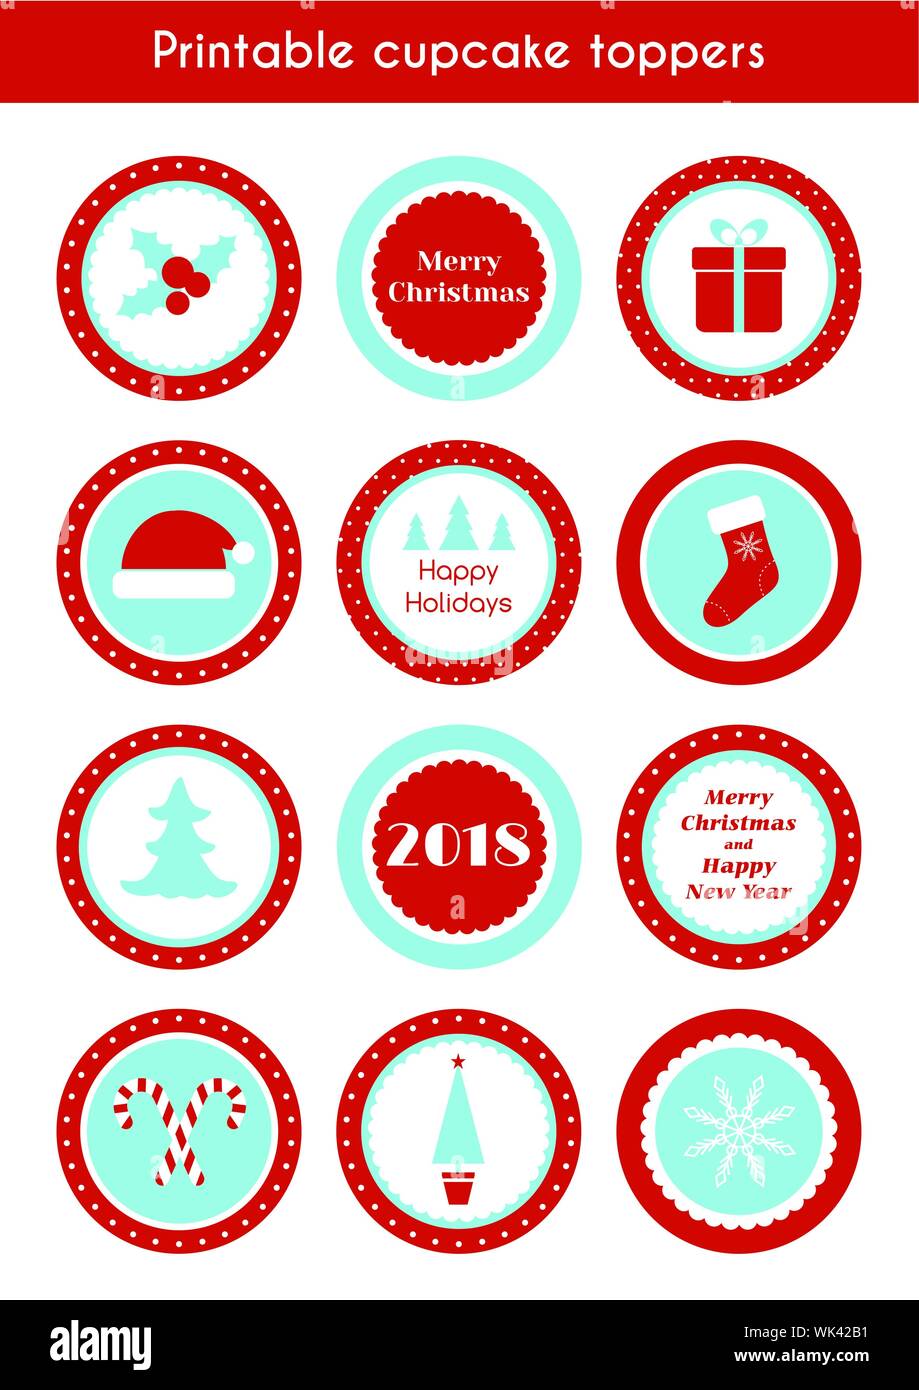 Version Noël autocollants de vecteur. Cupcake toppers, cercle des étiquettes pour party de Noël Illustration de Vecteur